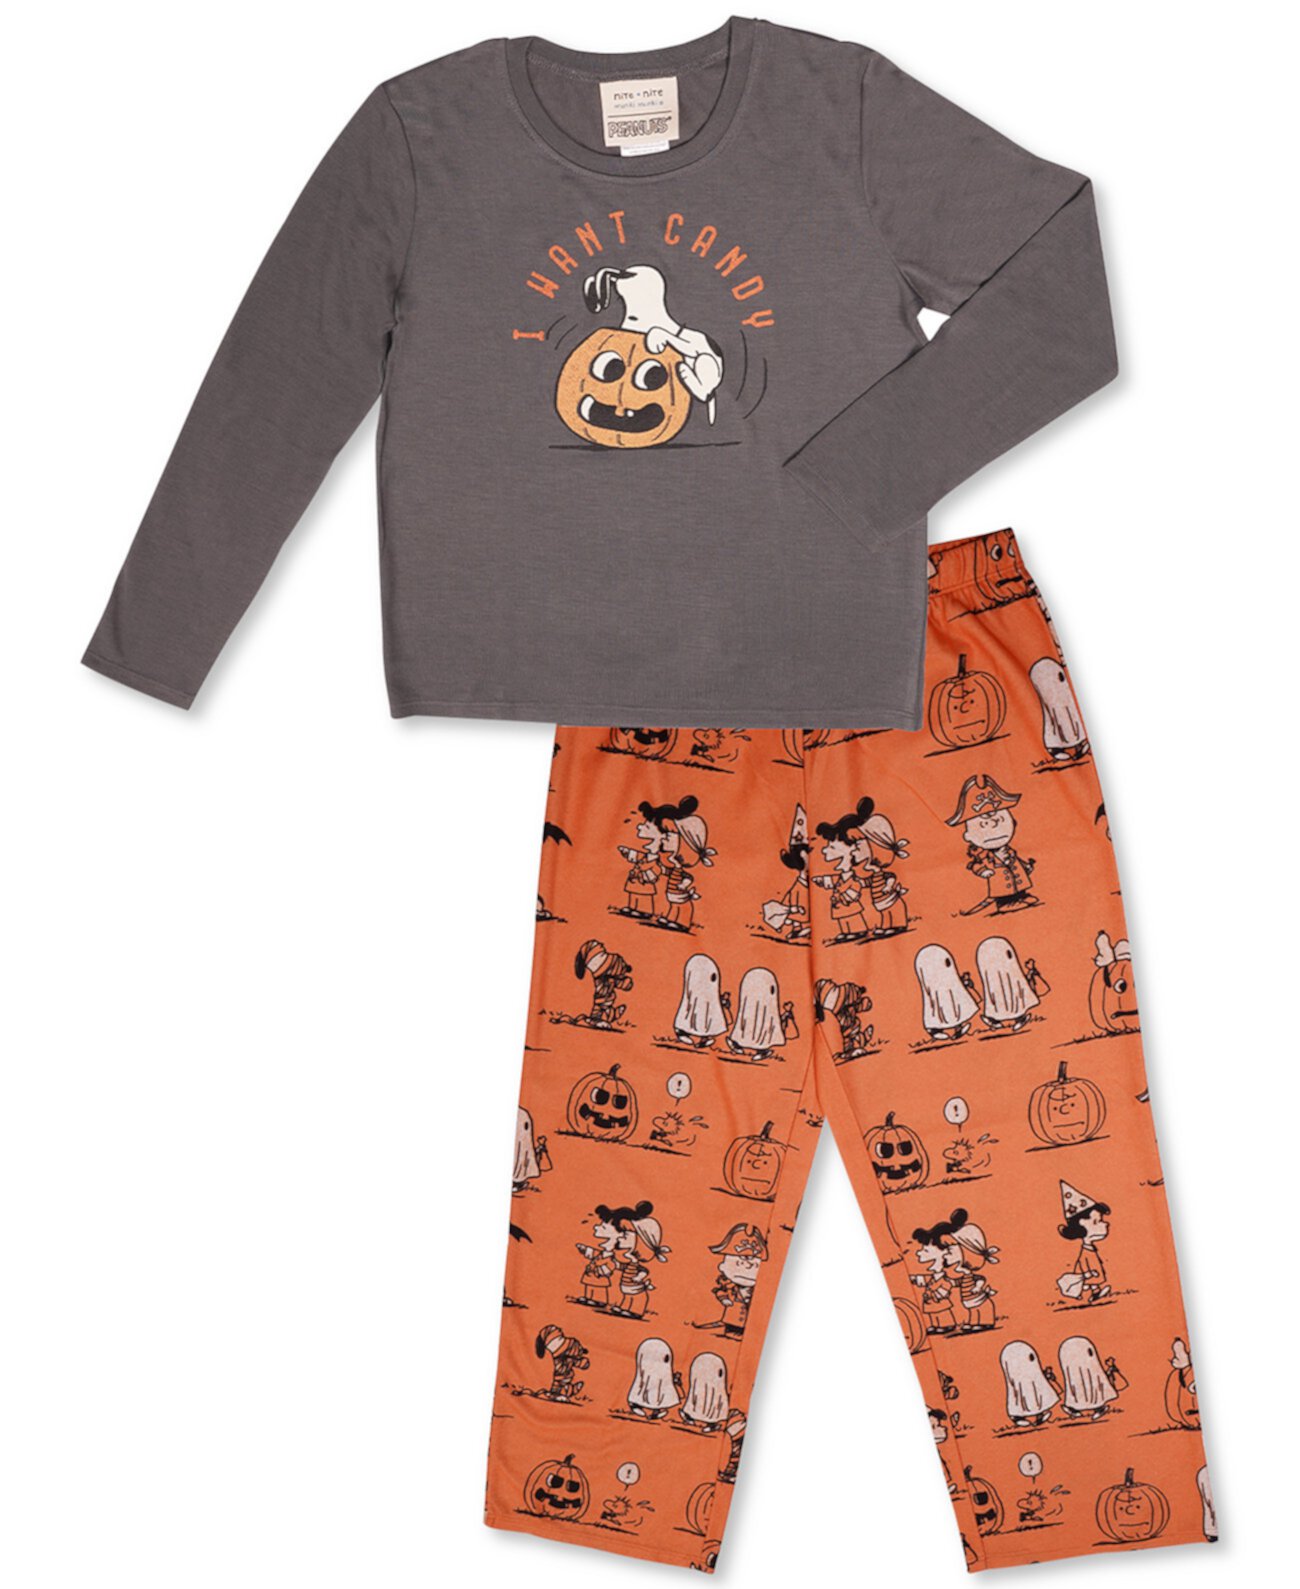 Соответствующий детский винтажный семейный пижамный комплект Snoopy & Friends на Хэллоуин Munki Munki